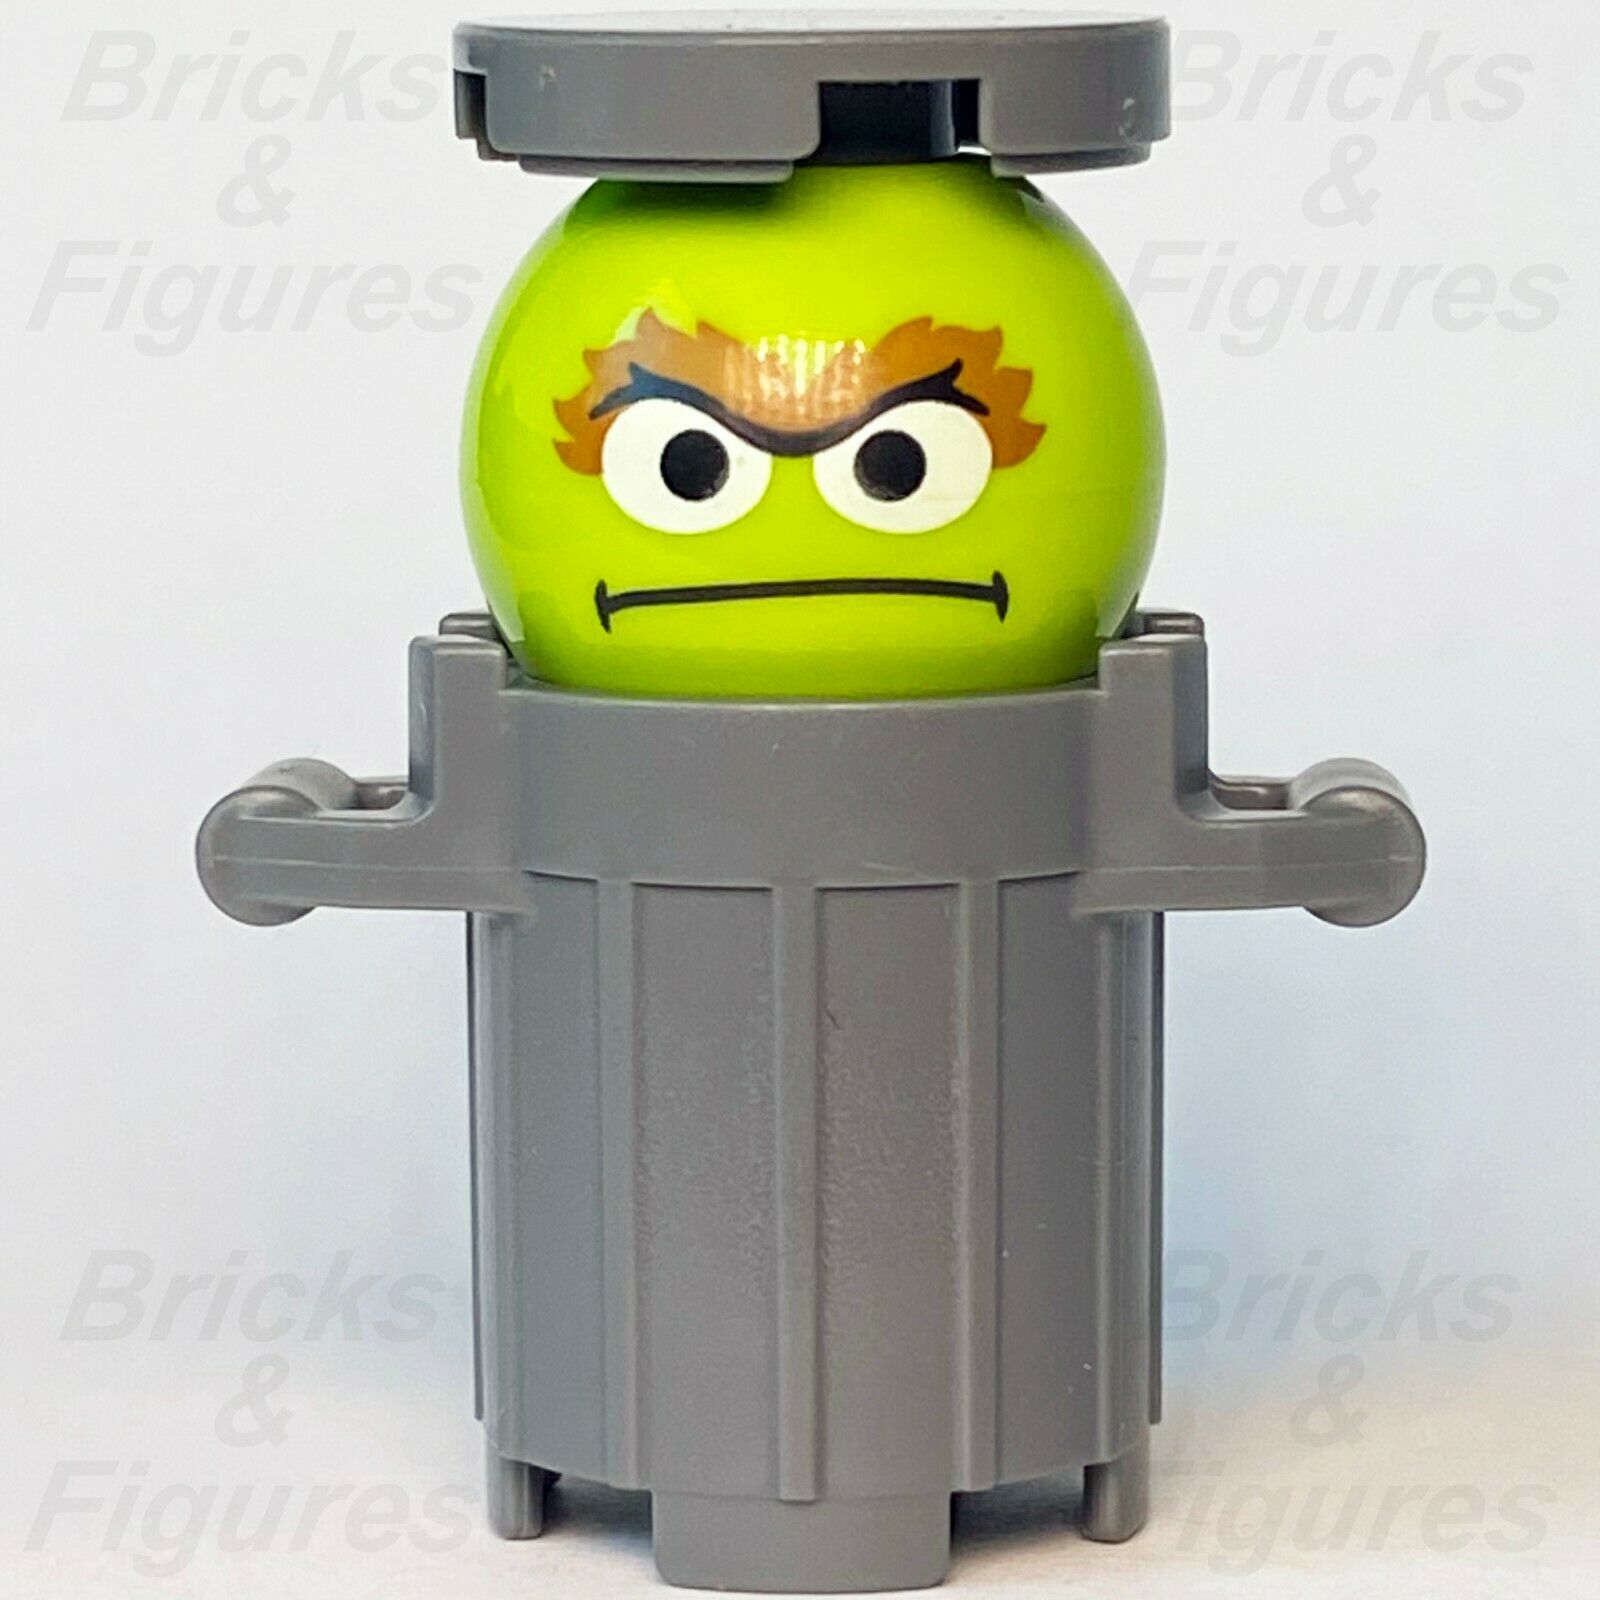 New Ideas LEGO Oscar The Grouch 123 Sesame Street Minifigure from set 21324 - Bricks & Figures